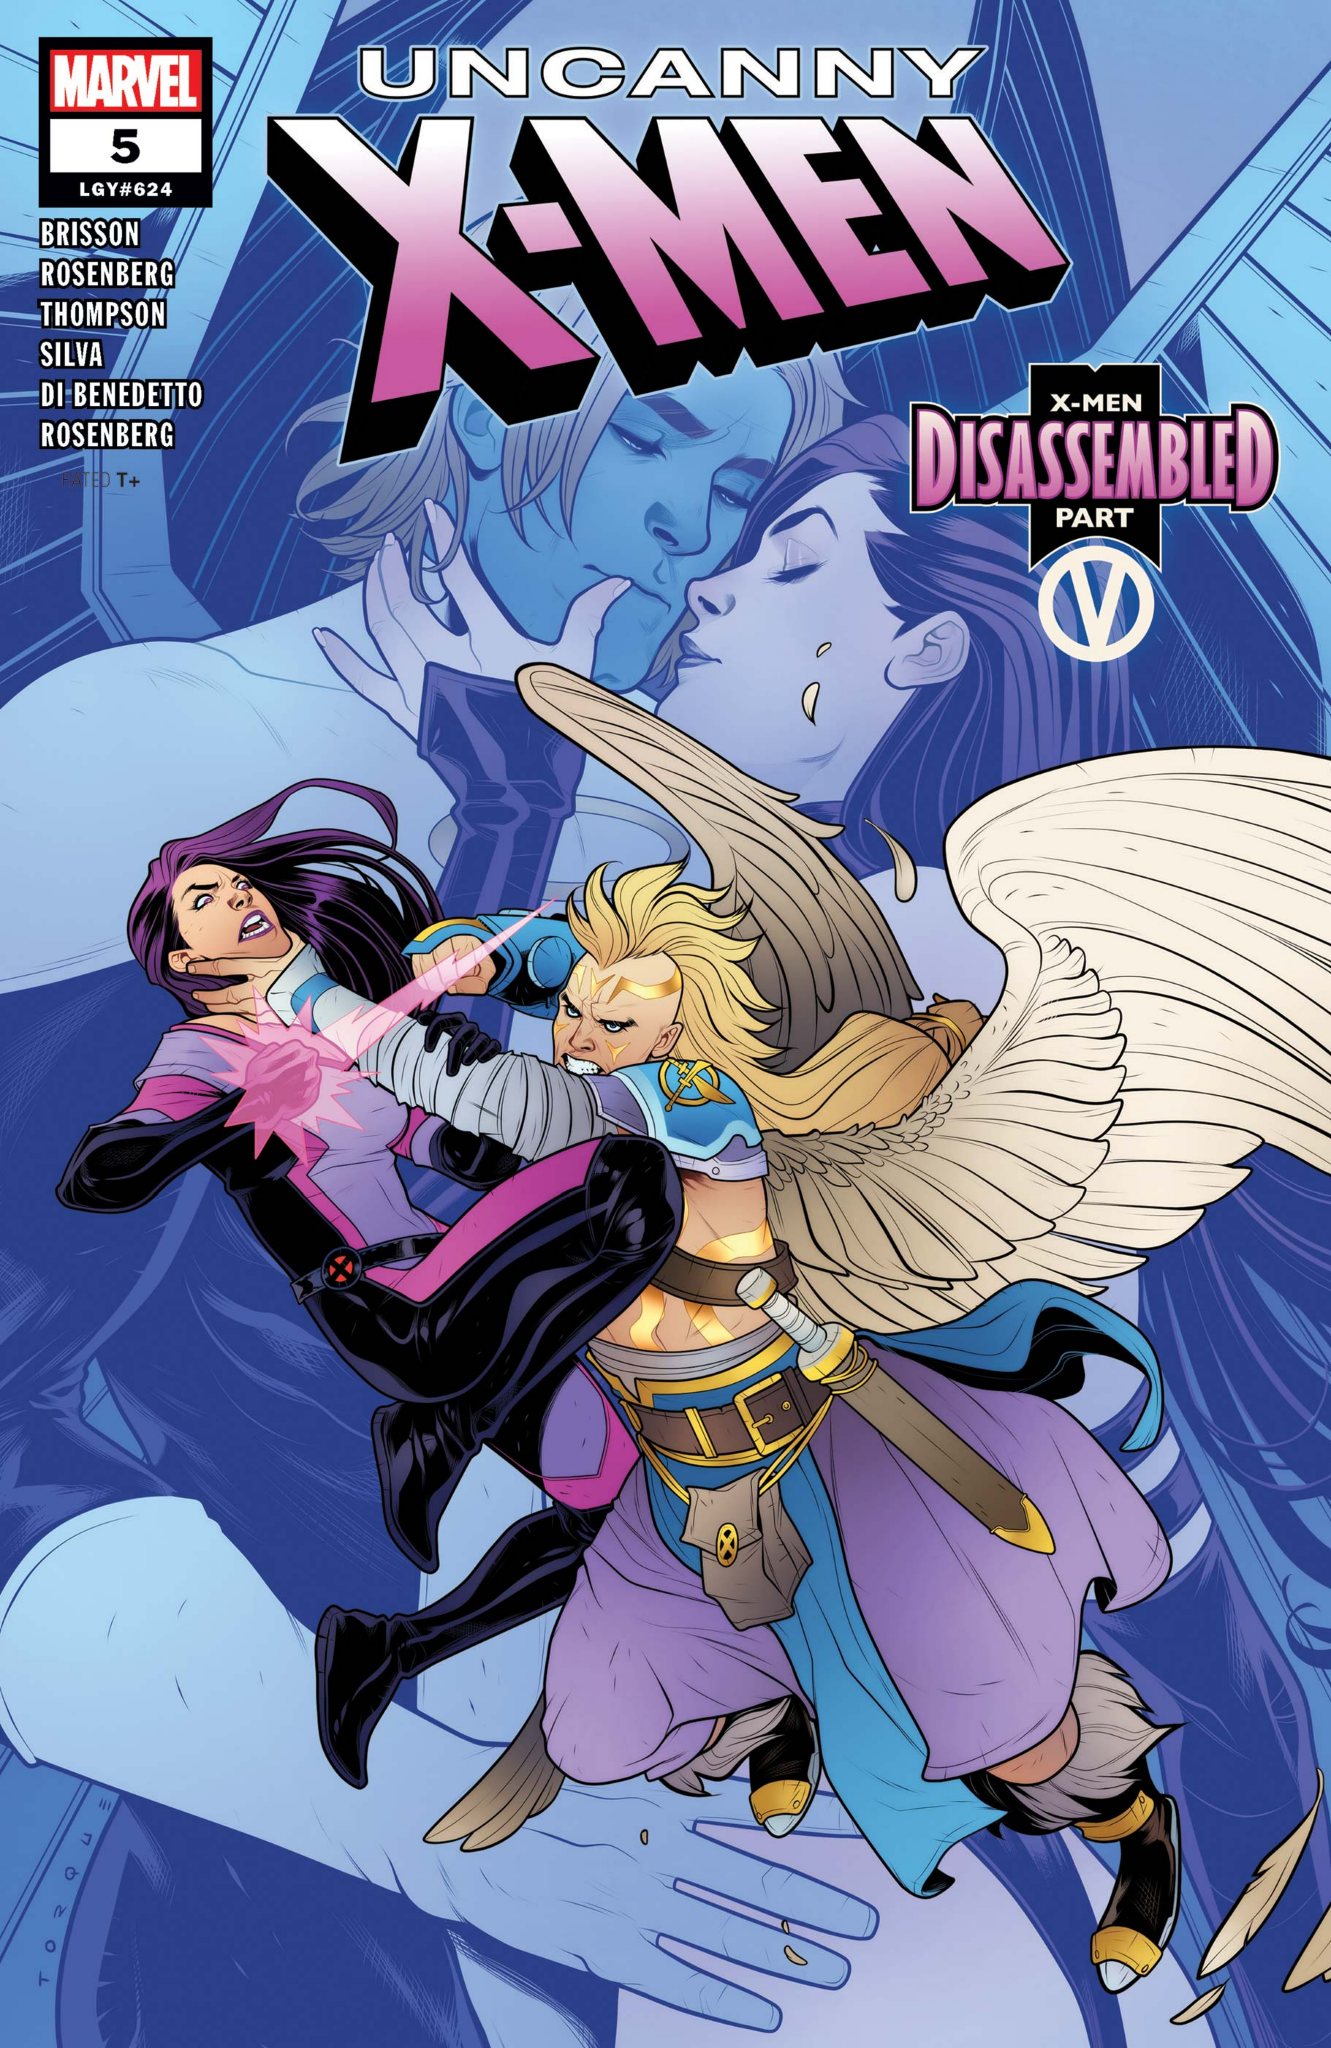 Couverture d'Uncanny X-Men #5 par Elizabeth Torque (Marvel Comics)